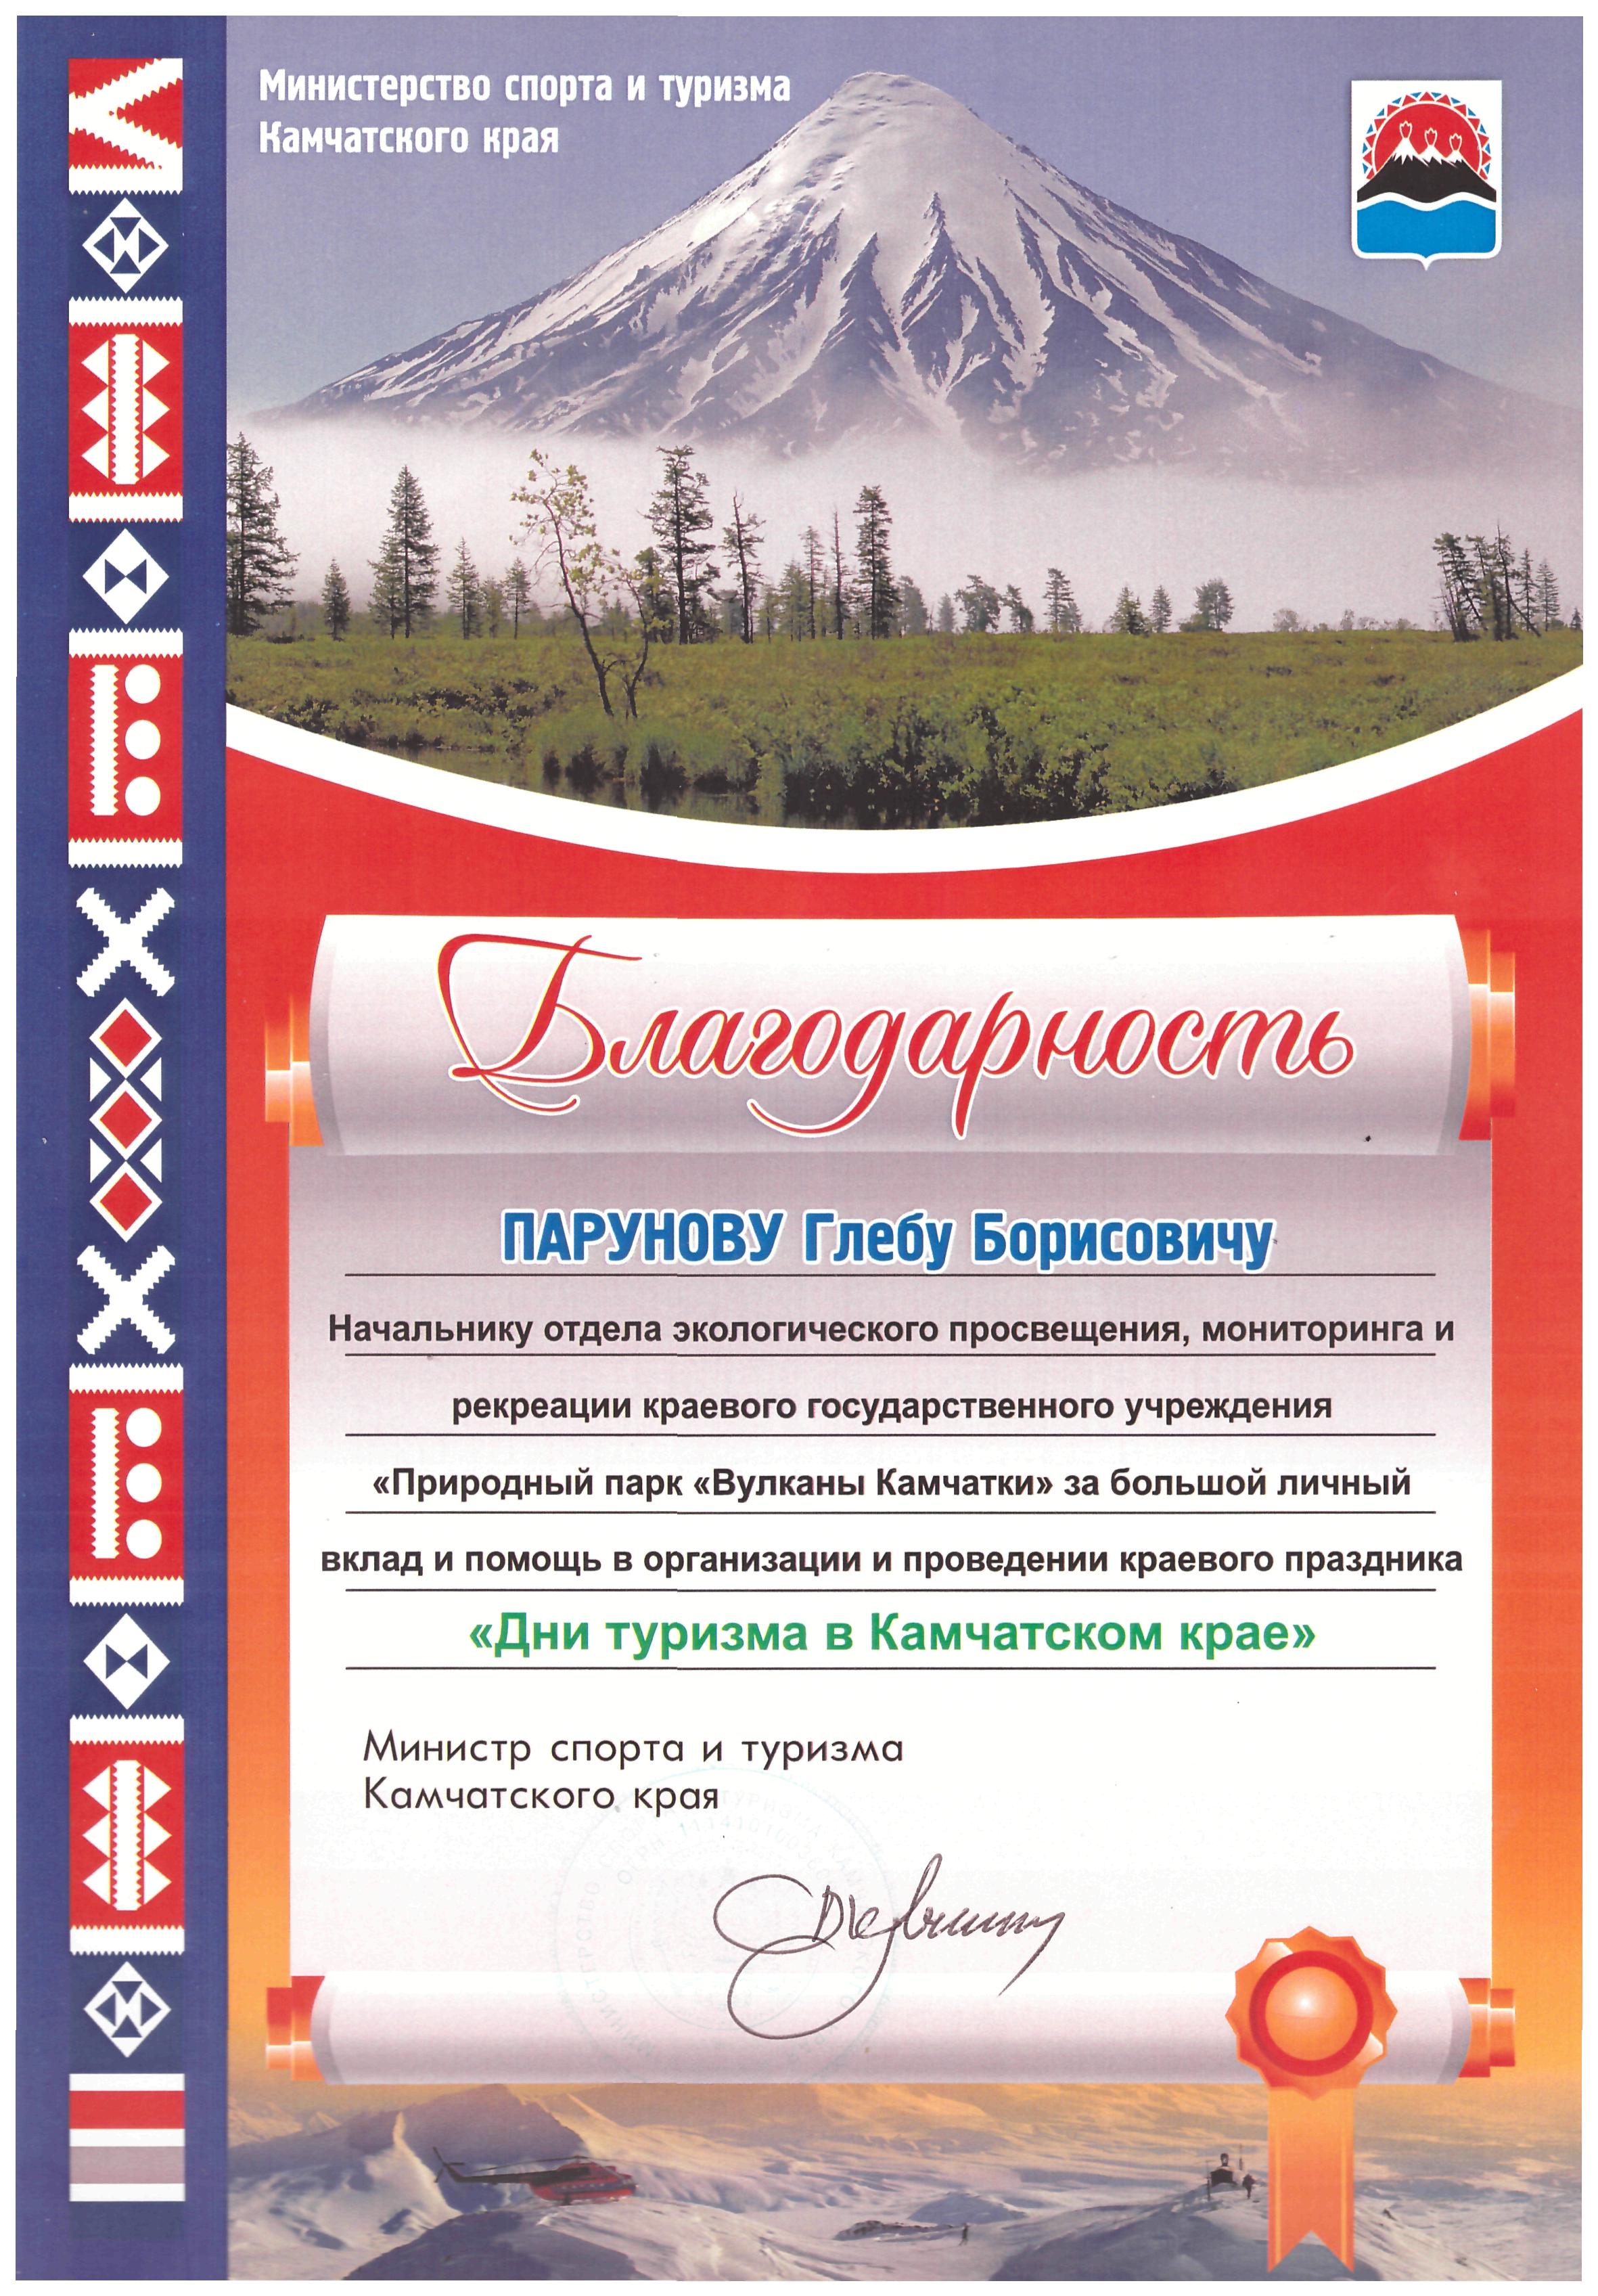 Благодарность за помощь в организации праздника Дни туризма в Камчатском крае